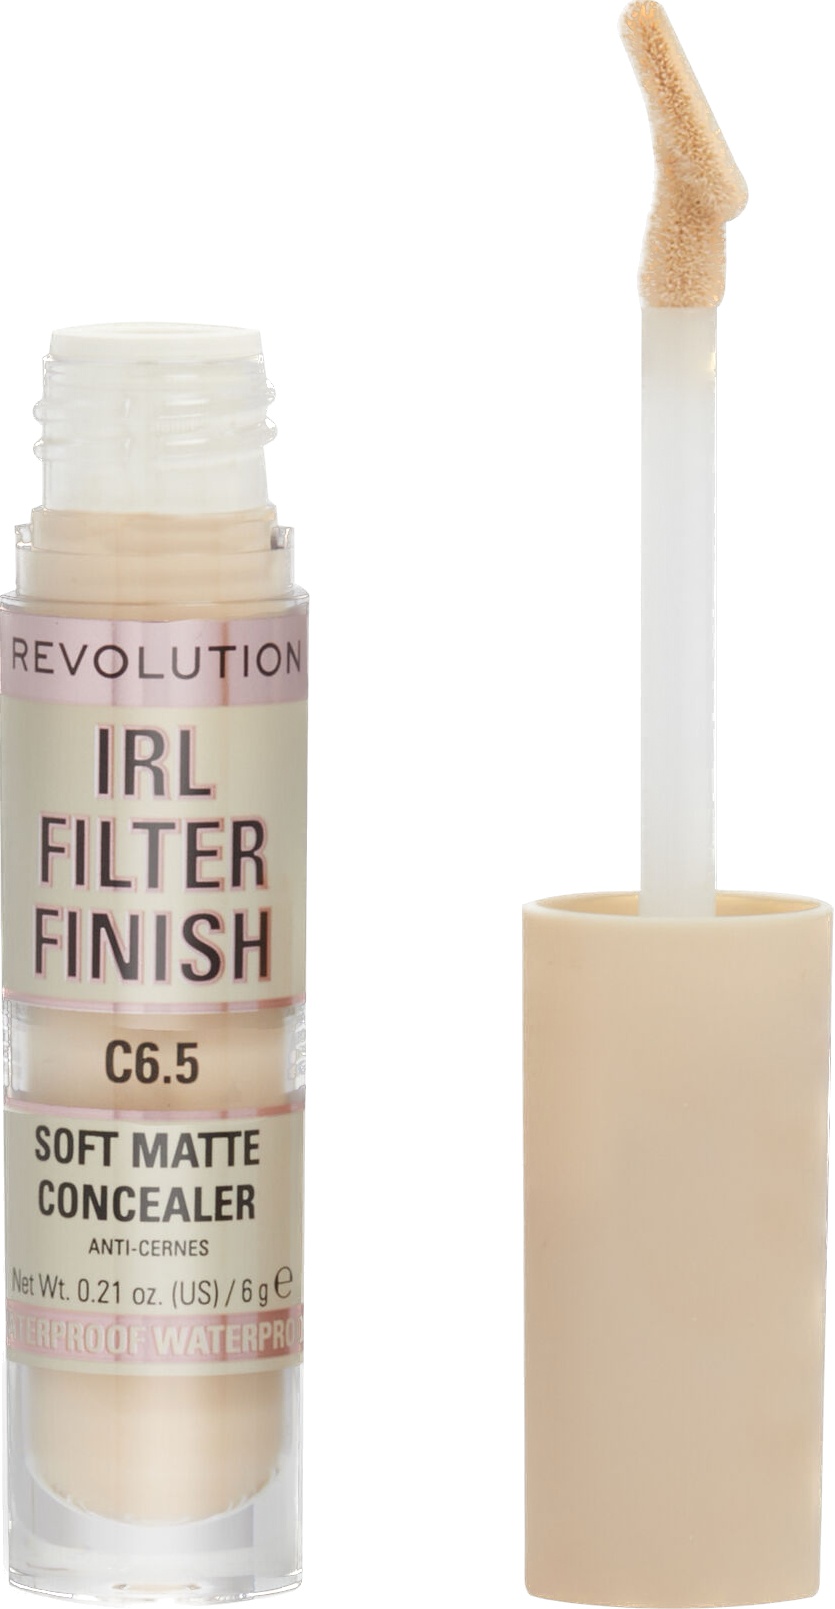 Revolution IRL Filter Finish Soft Matte Concealer